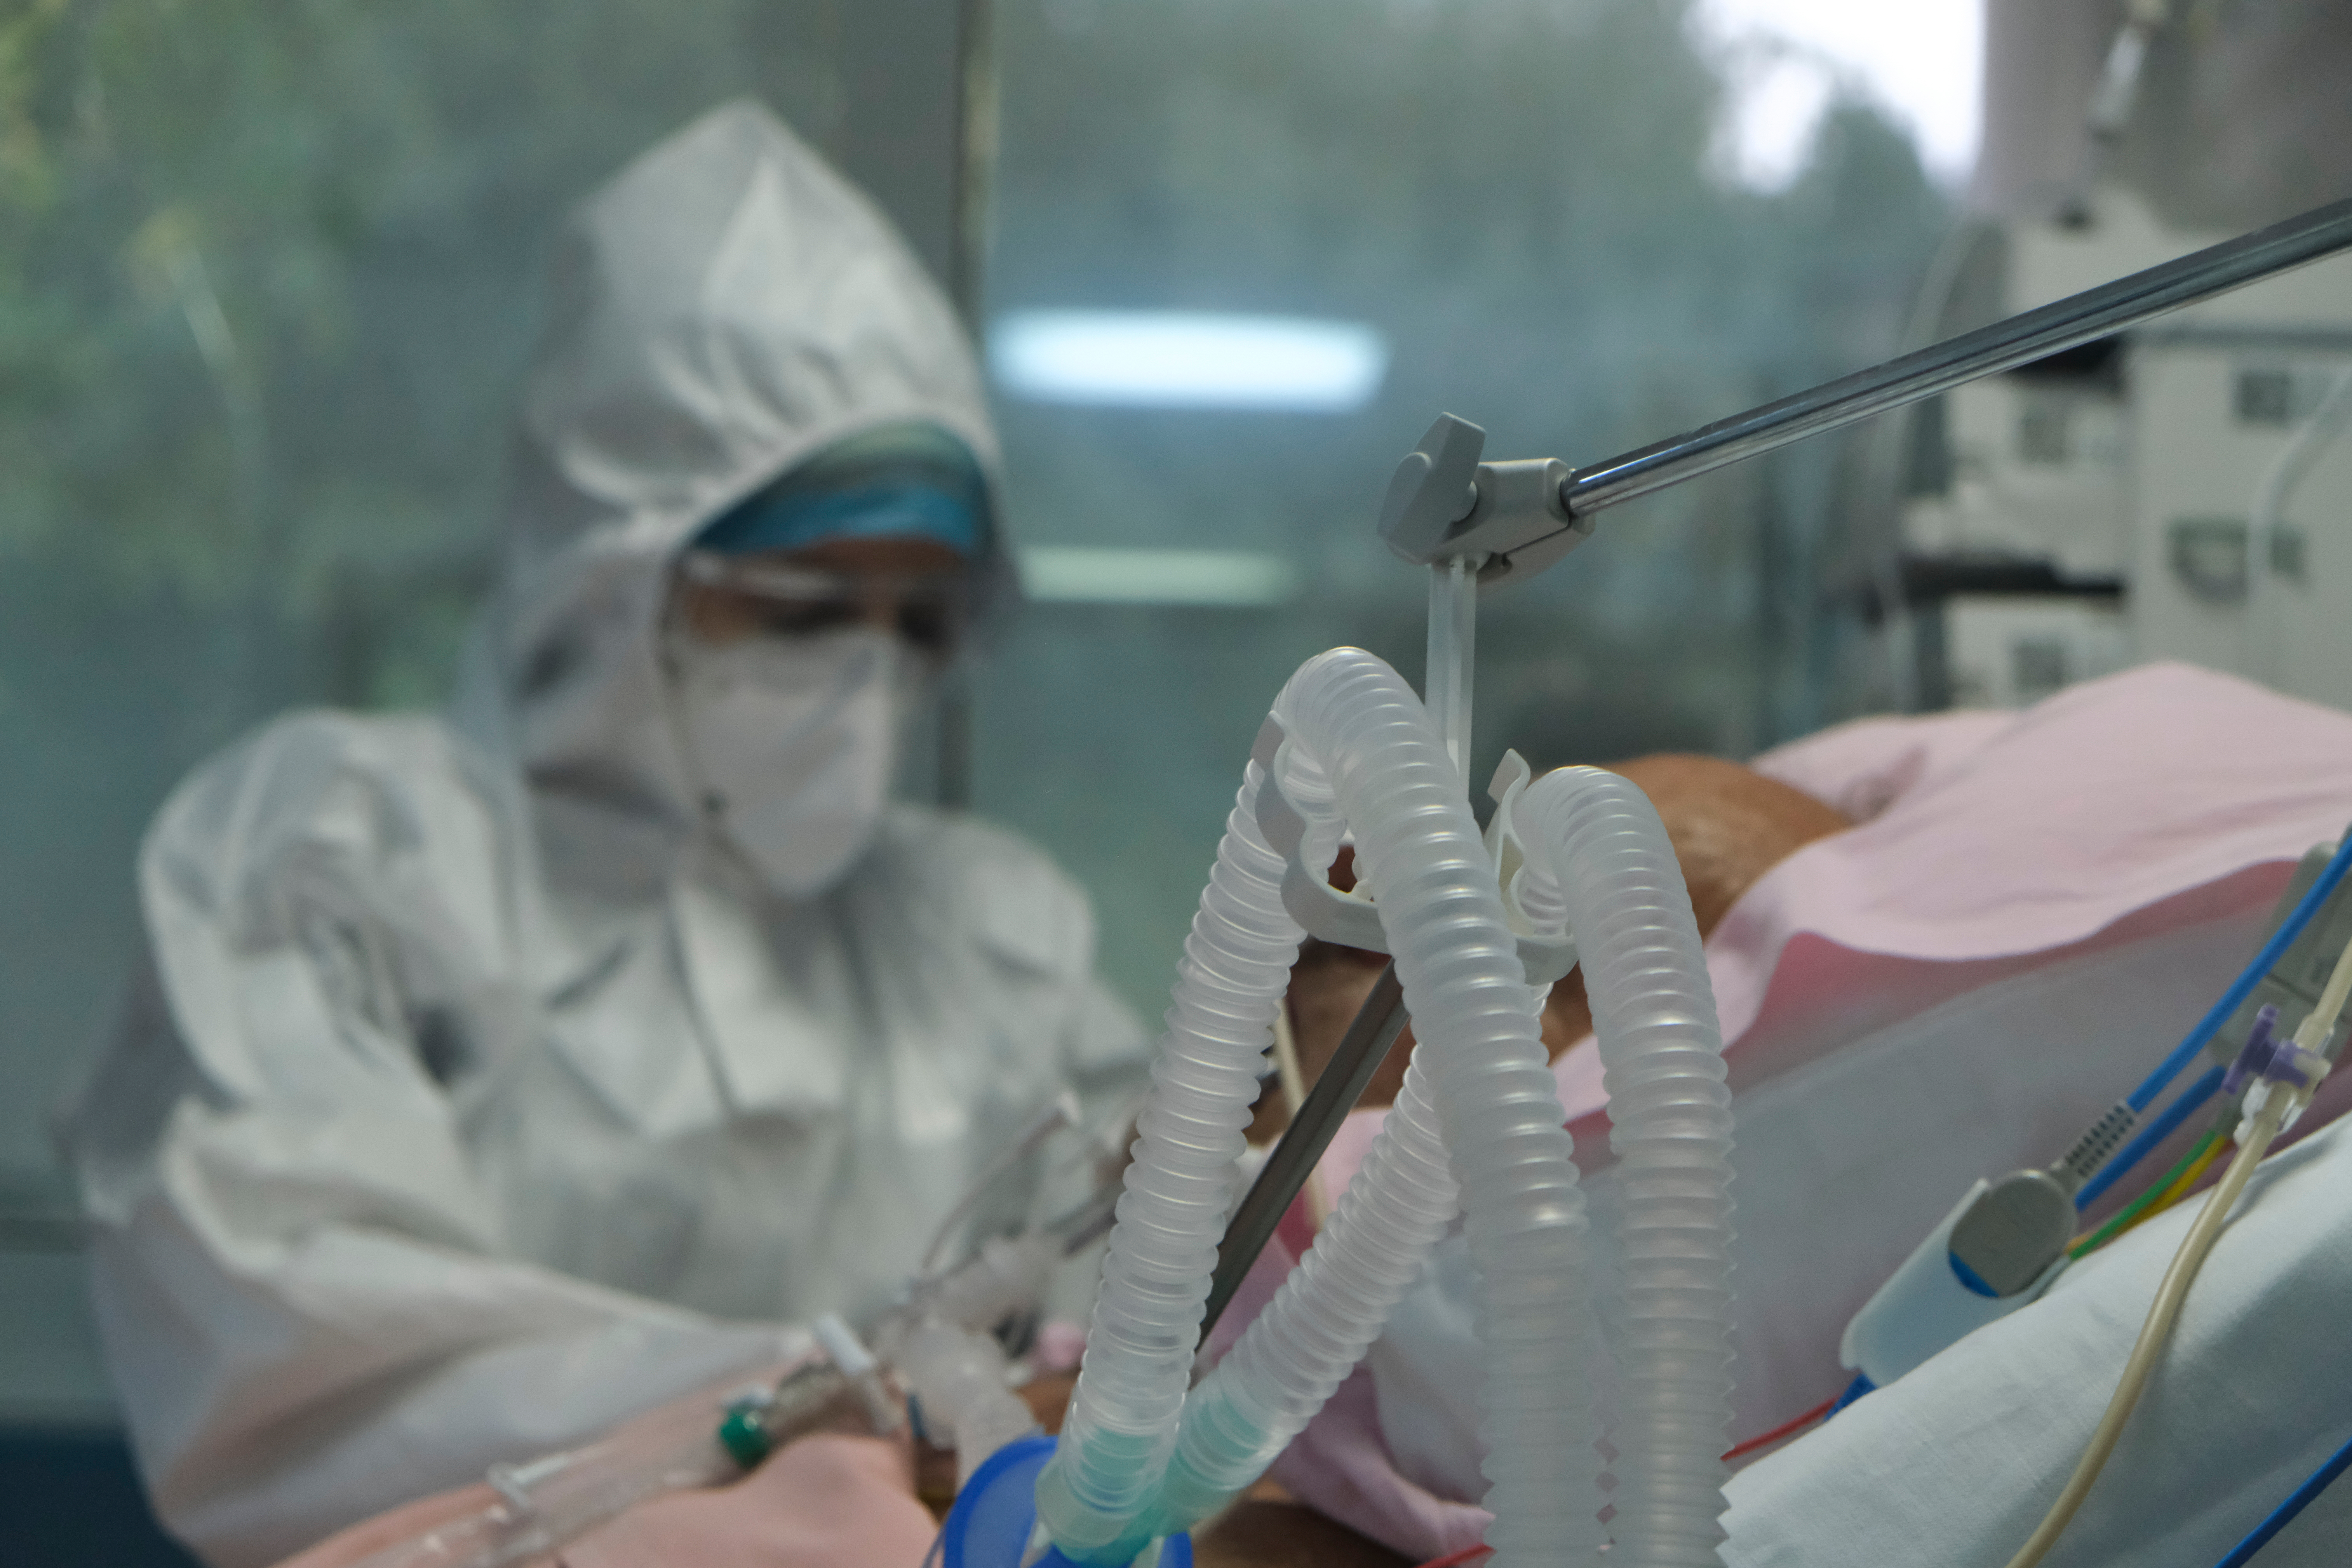 Spitalul Judeţean Buzău a ajuns să interneze adulţi bolnavi de coronavirus, în stare gravă, pe locurile ATI pentru copii